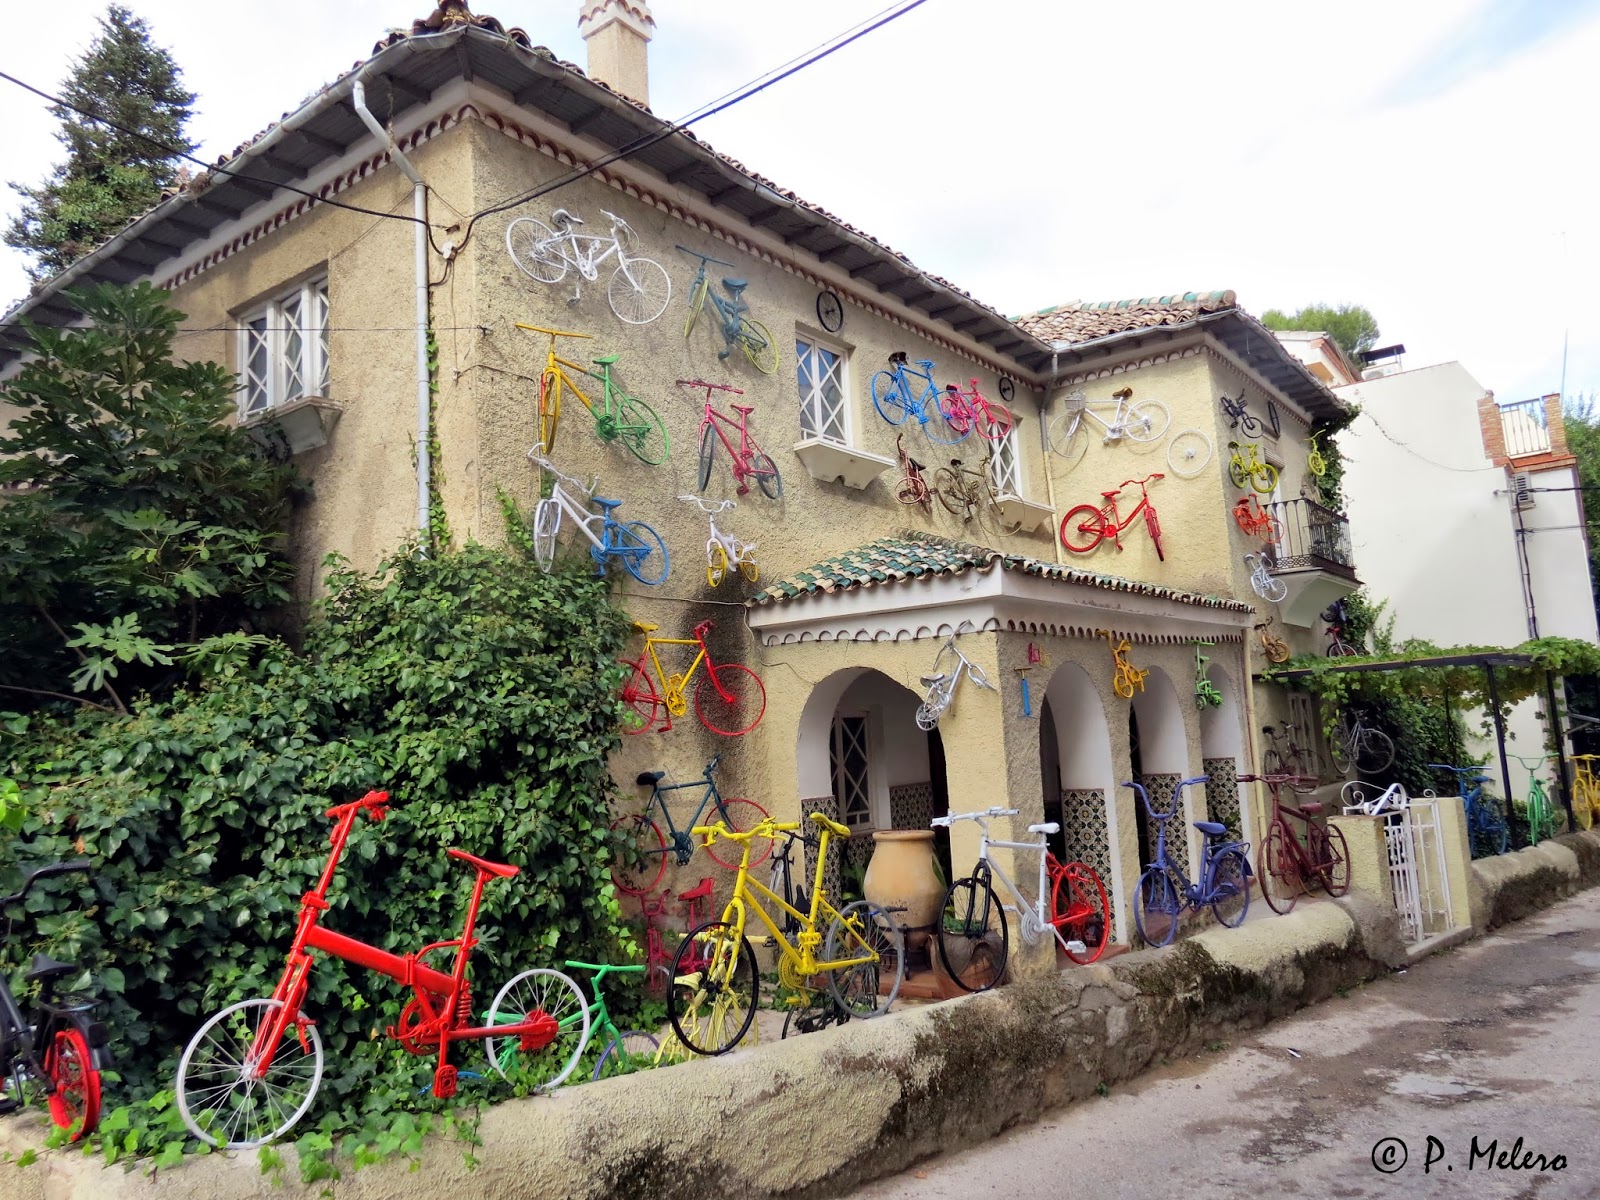 Entrada Marco de referencia Relativo Artcazorla Pedro Melero: Fachada de casa decorada con bicicletas. Cazorla.